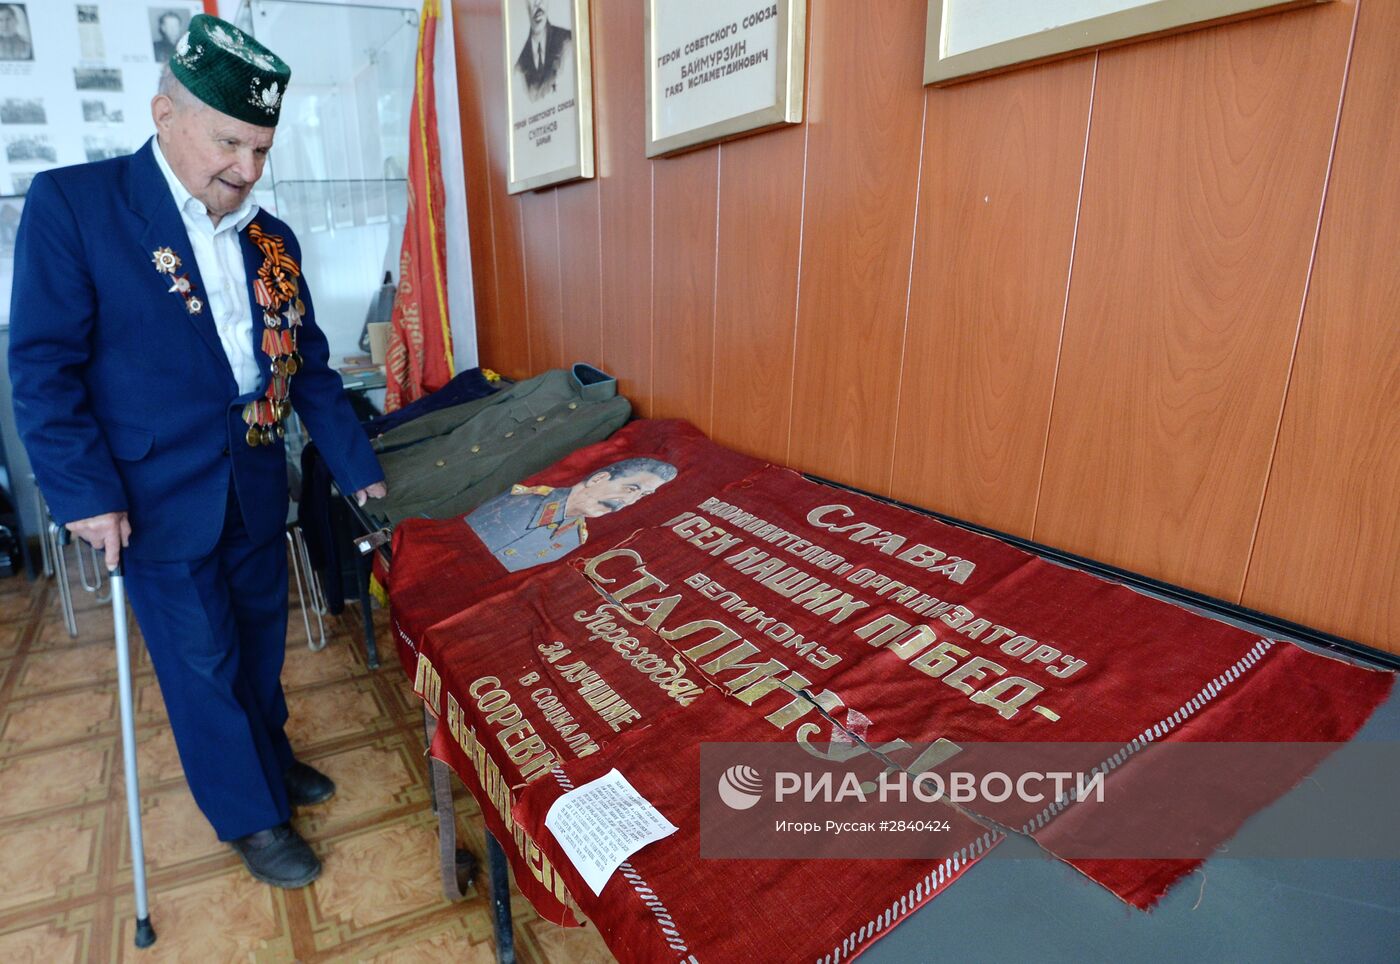 Ветеран ВОВ Сунагат Якупов из Челябинской области